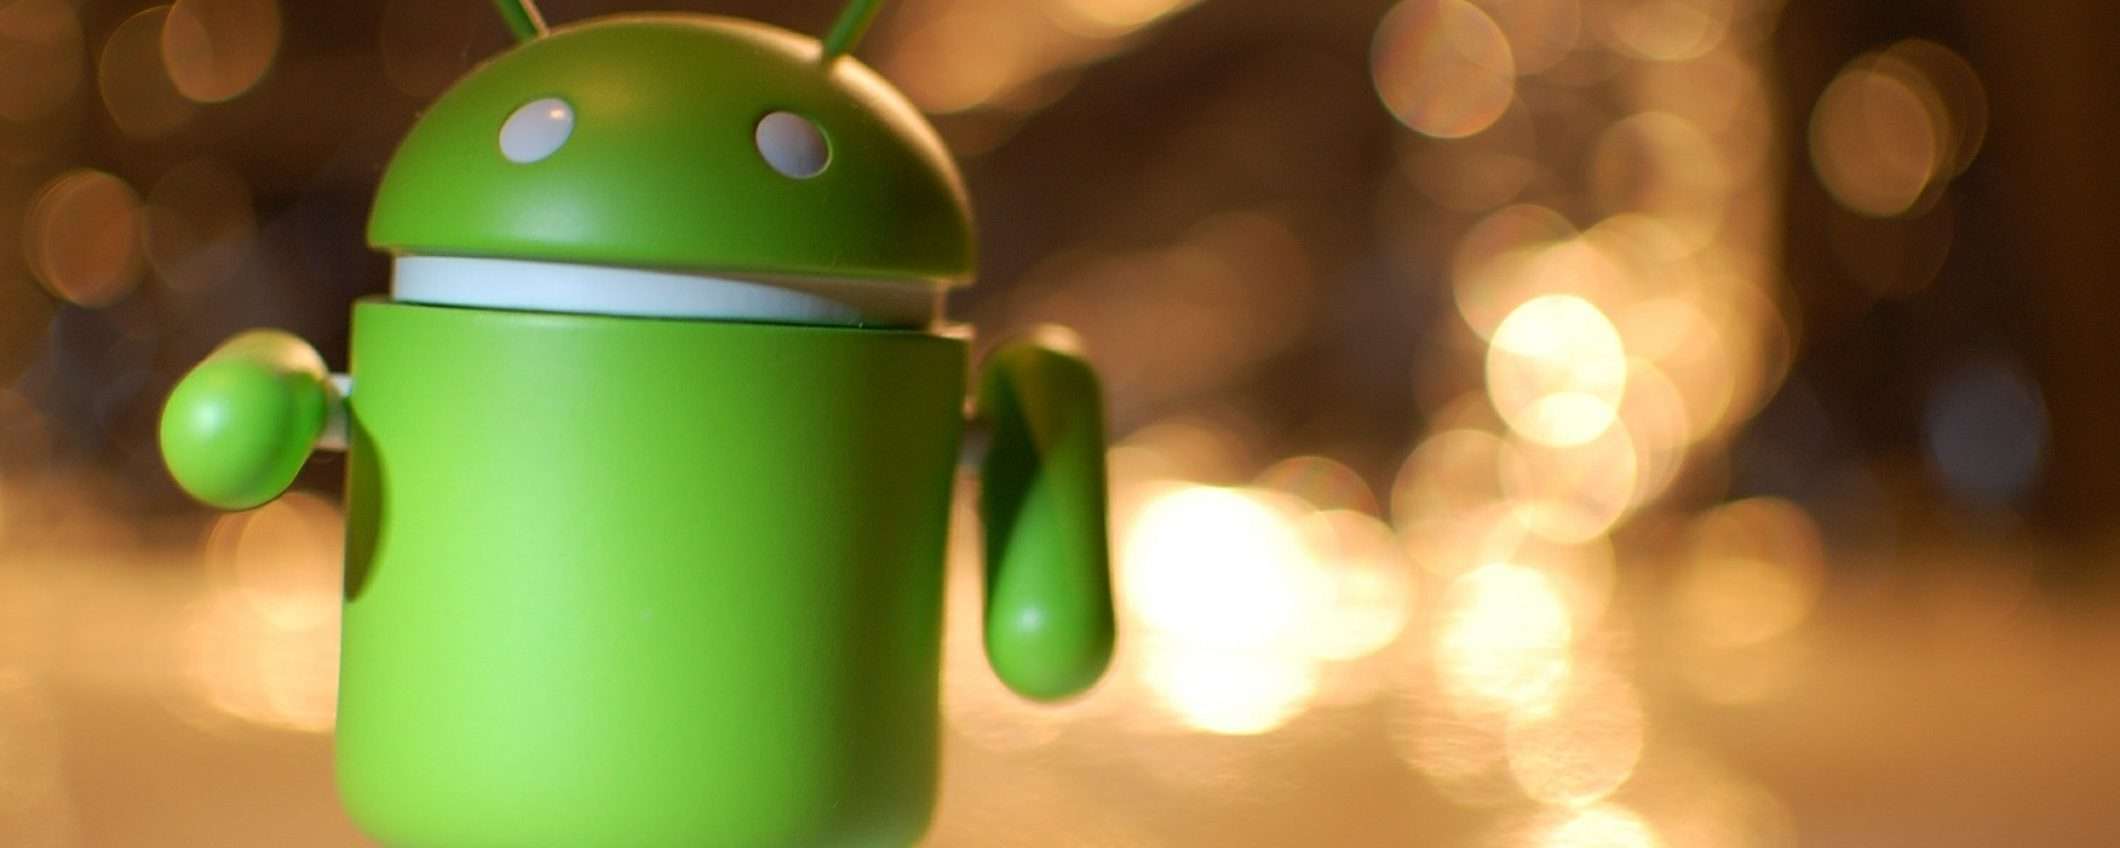 BRATA: nuove funzionalità del malware Android